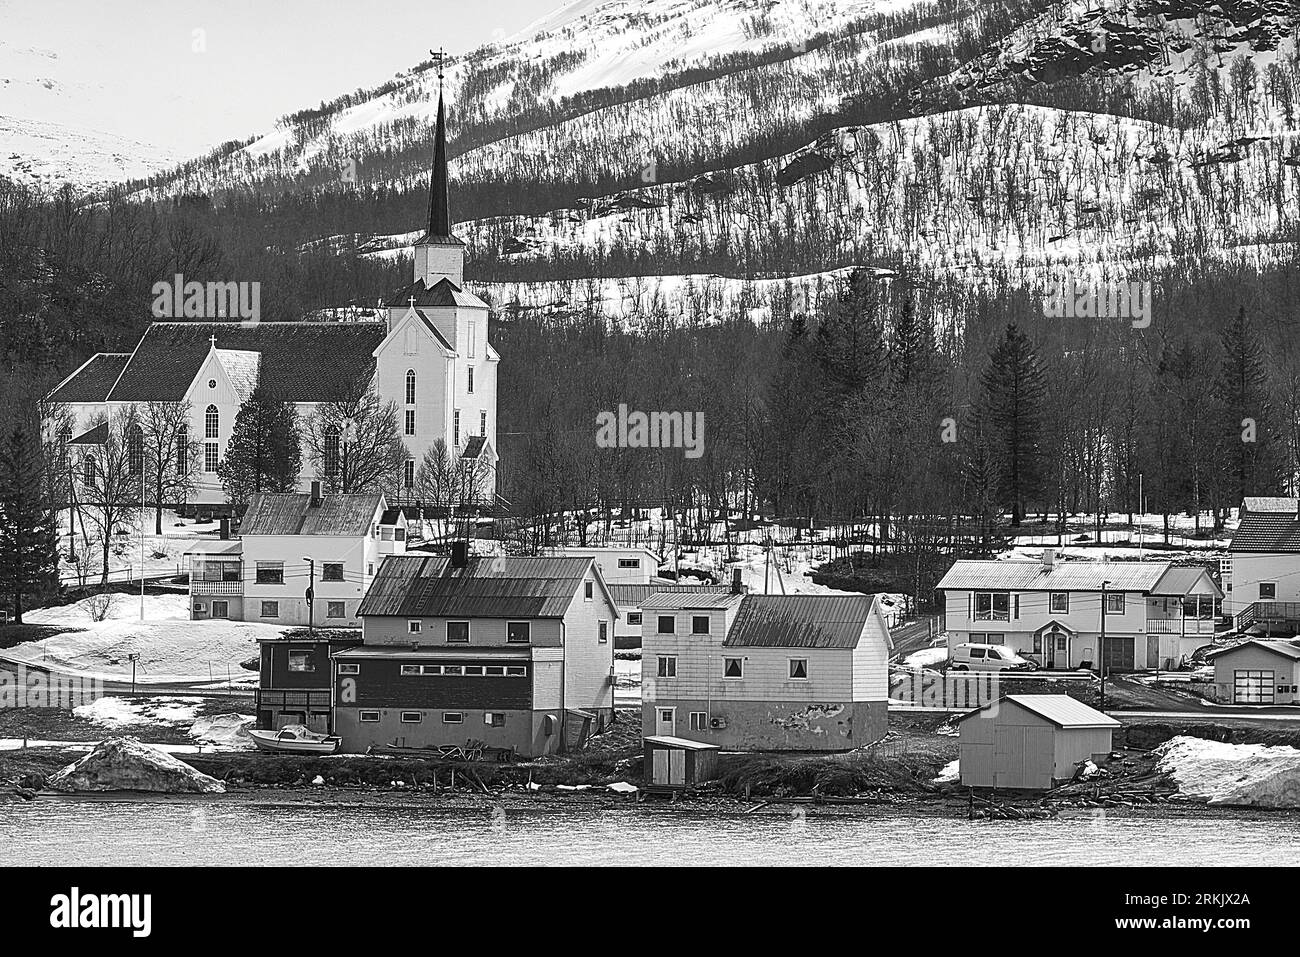 Foto in bianco e nero del legno incorniciato, Chiesa di Norvegia, Chiesa di Lenvik, costruita nel 1879, situata sulle rive dello stretto di Gisundet, Norvegia. Foto Stock